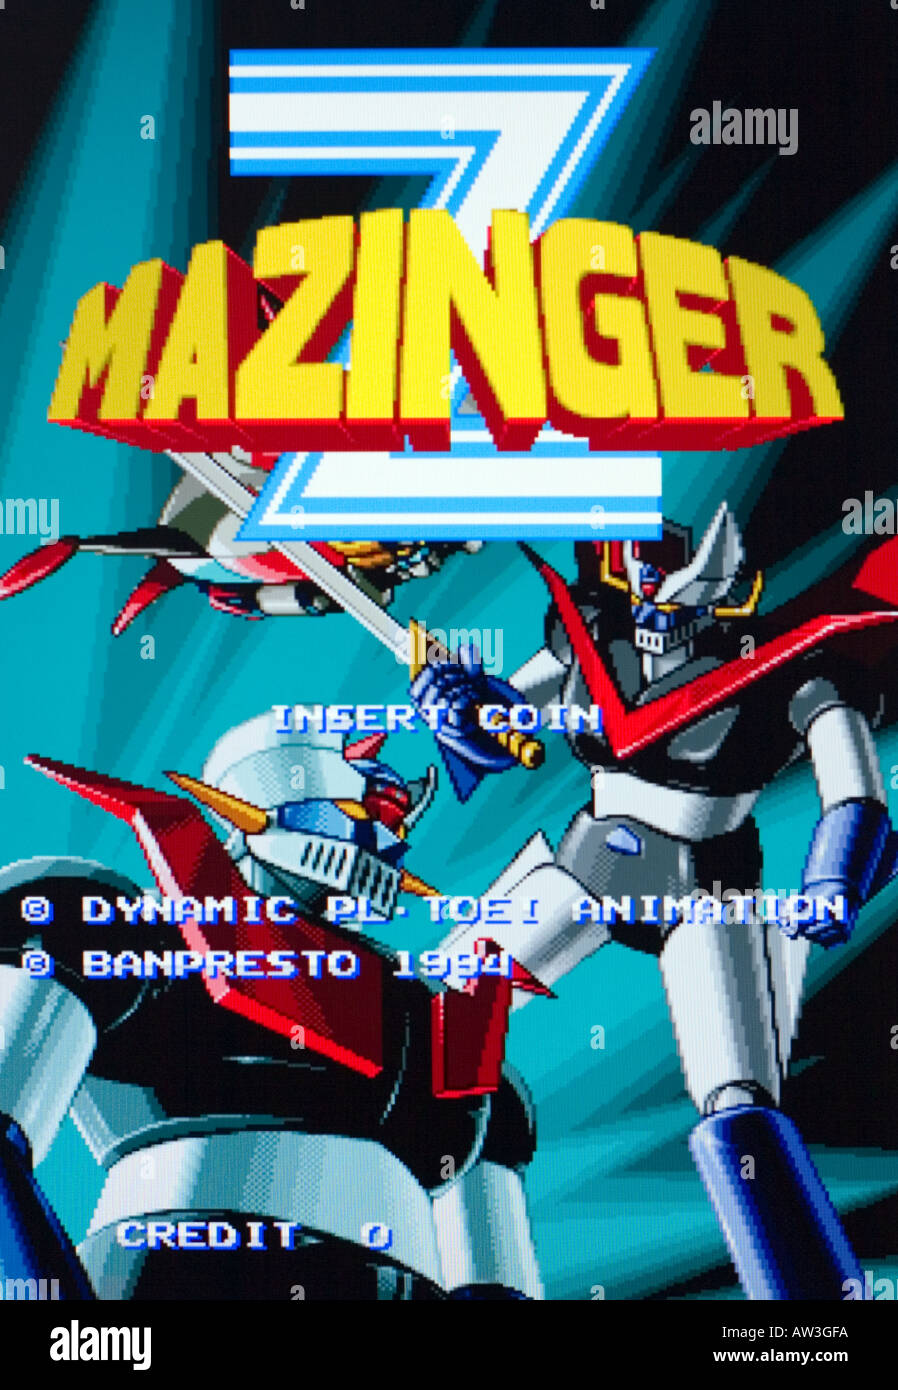 Mazinger Z Toei Animation Banpresto Dynamic PL 1994 Vintage videojuego arcade captura de pantalla - SÓLO PARA USO EDITORIAL Foto de stock